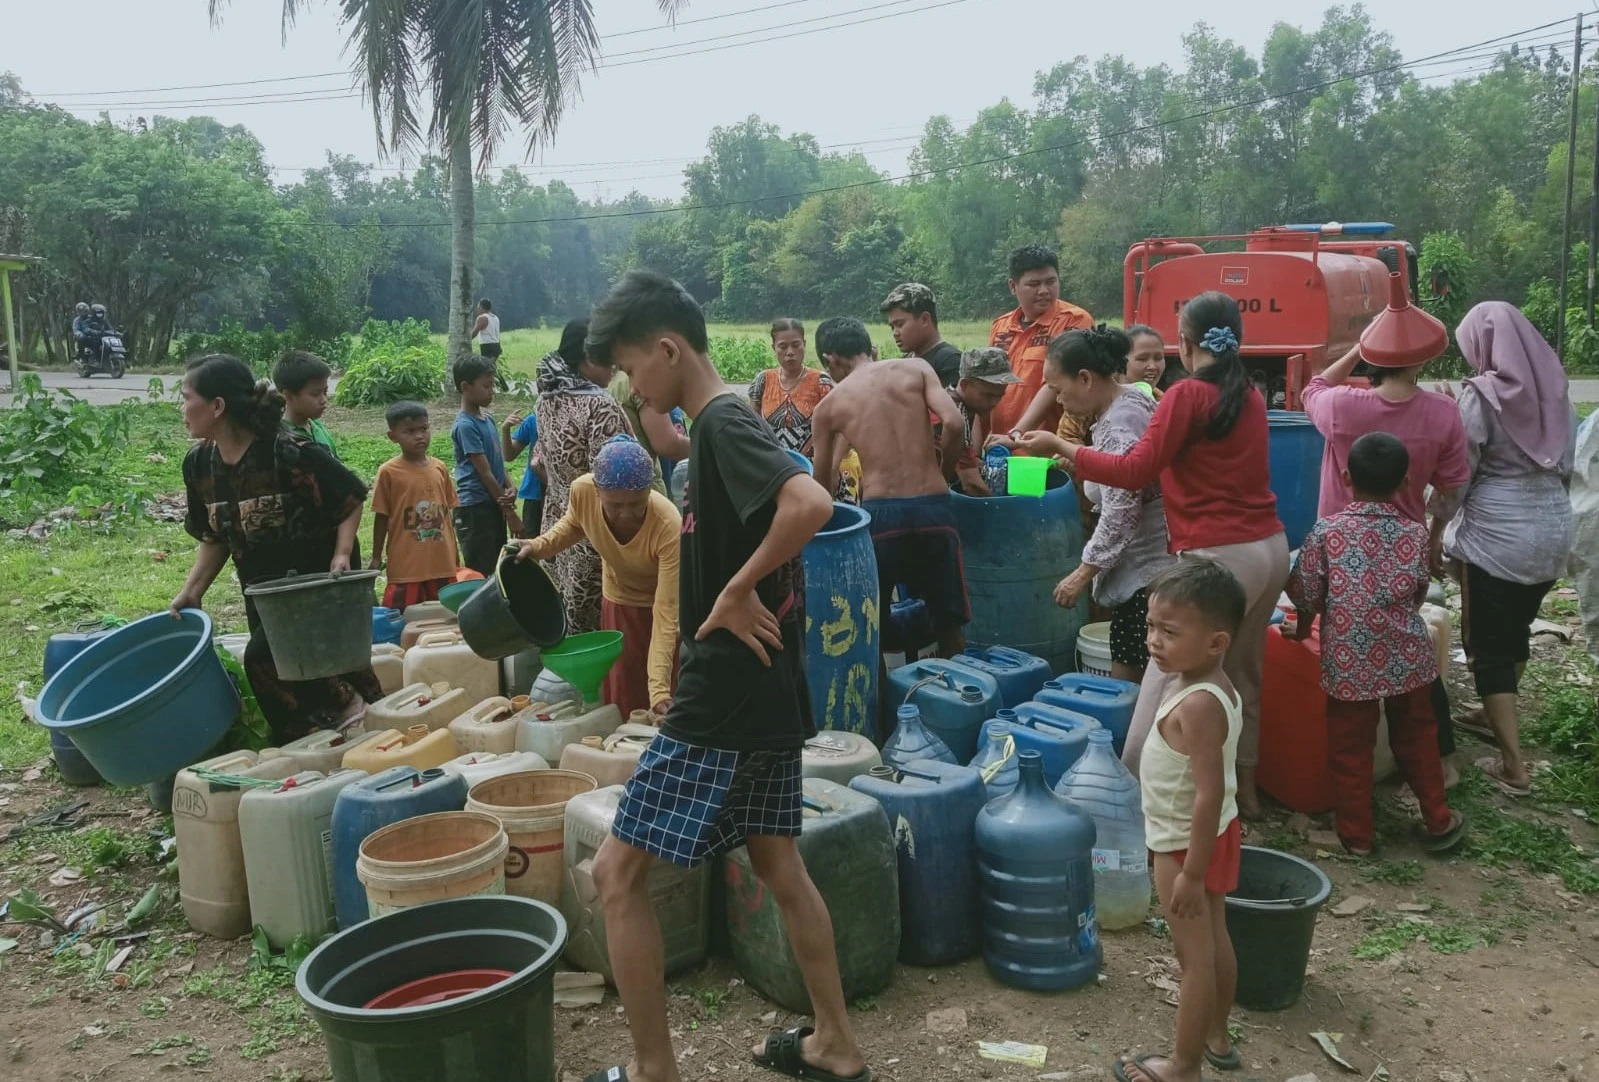 Pemerintah Kabupaten Bekasi menetapkan status Tanggap Darurat Bencana Kekeringan menyusul meluasnya wilayah terdampak krisis air bersih sekaligus upaya percepatan penanganan bantuan secara lebih masif.